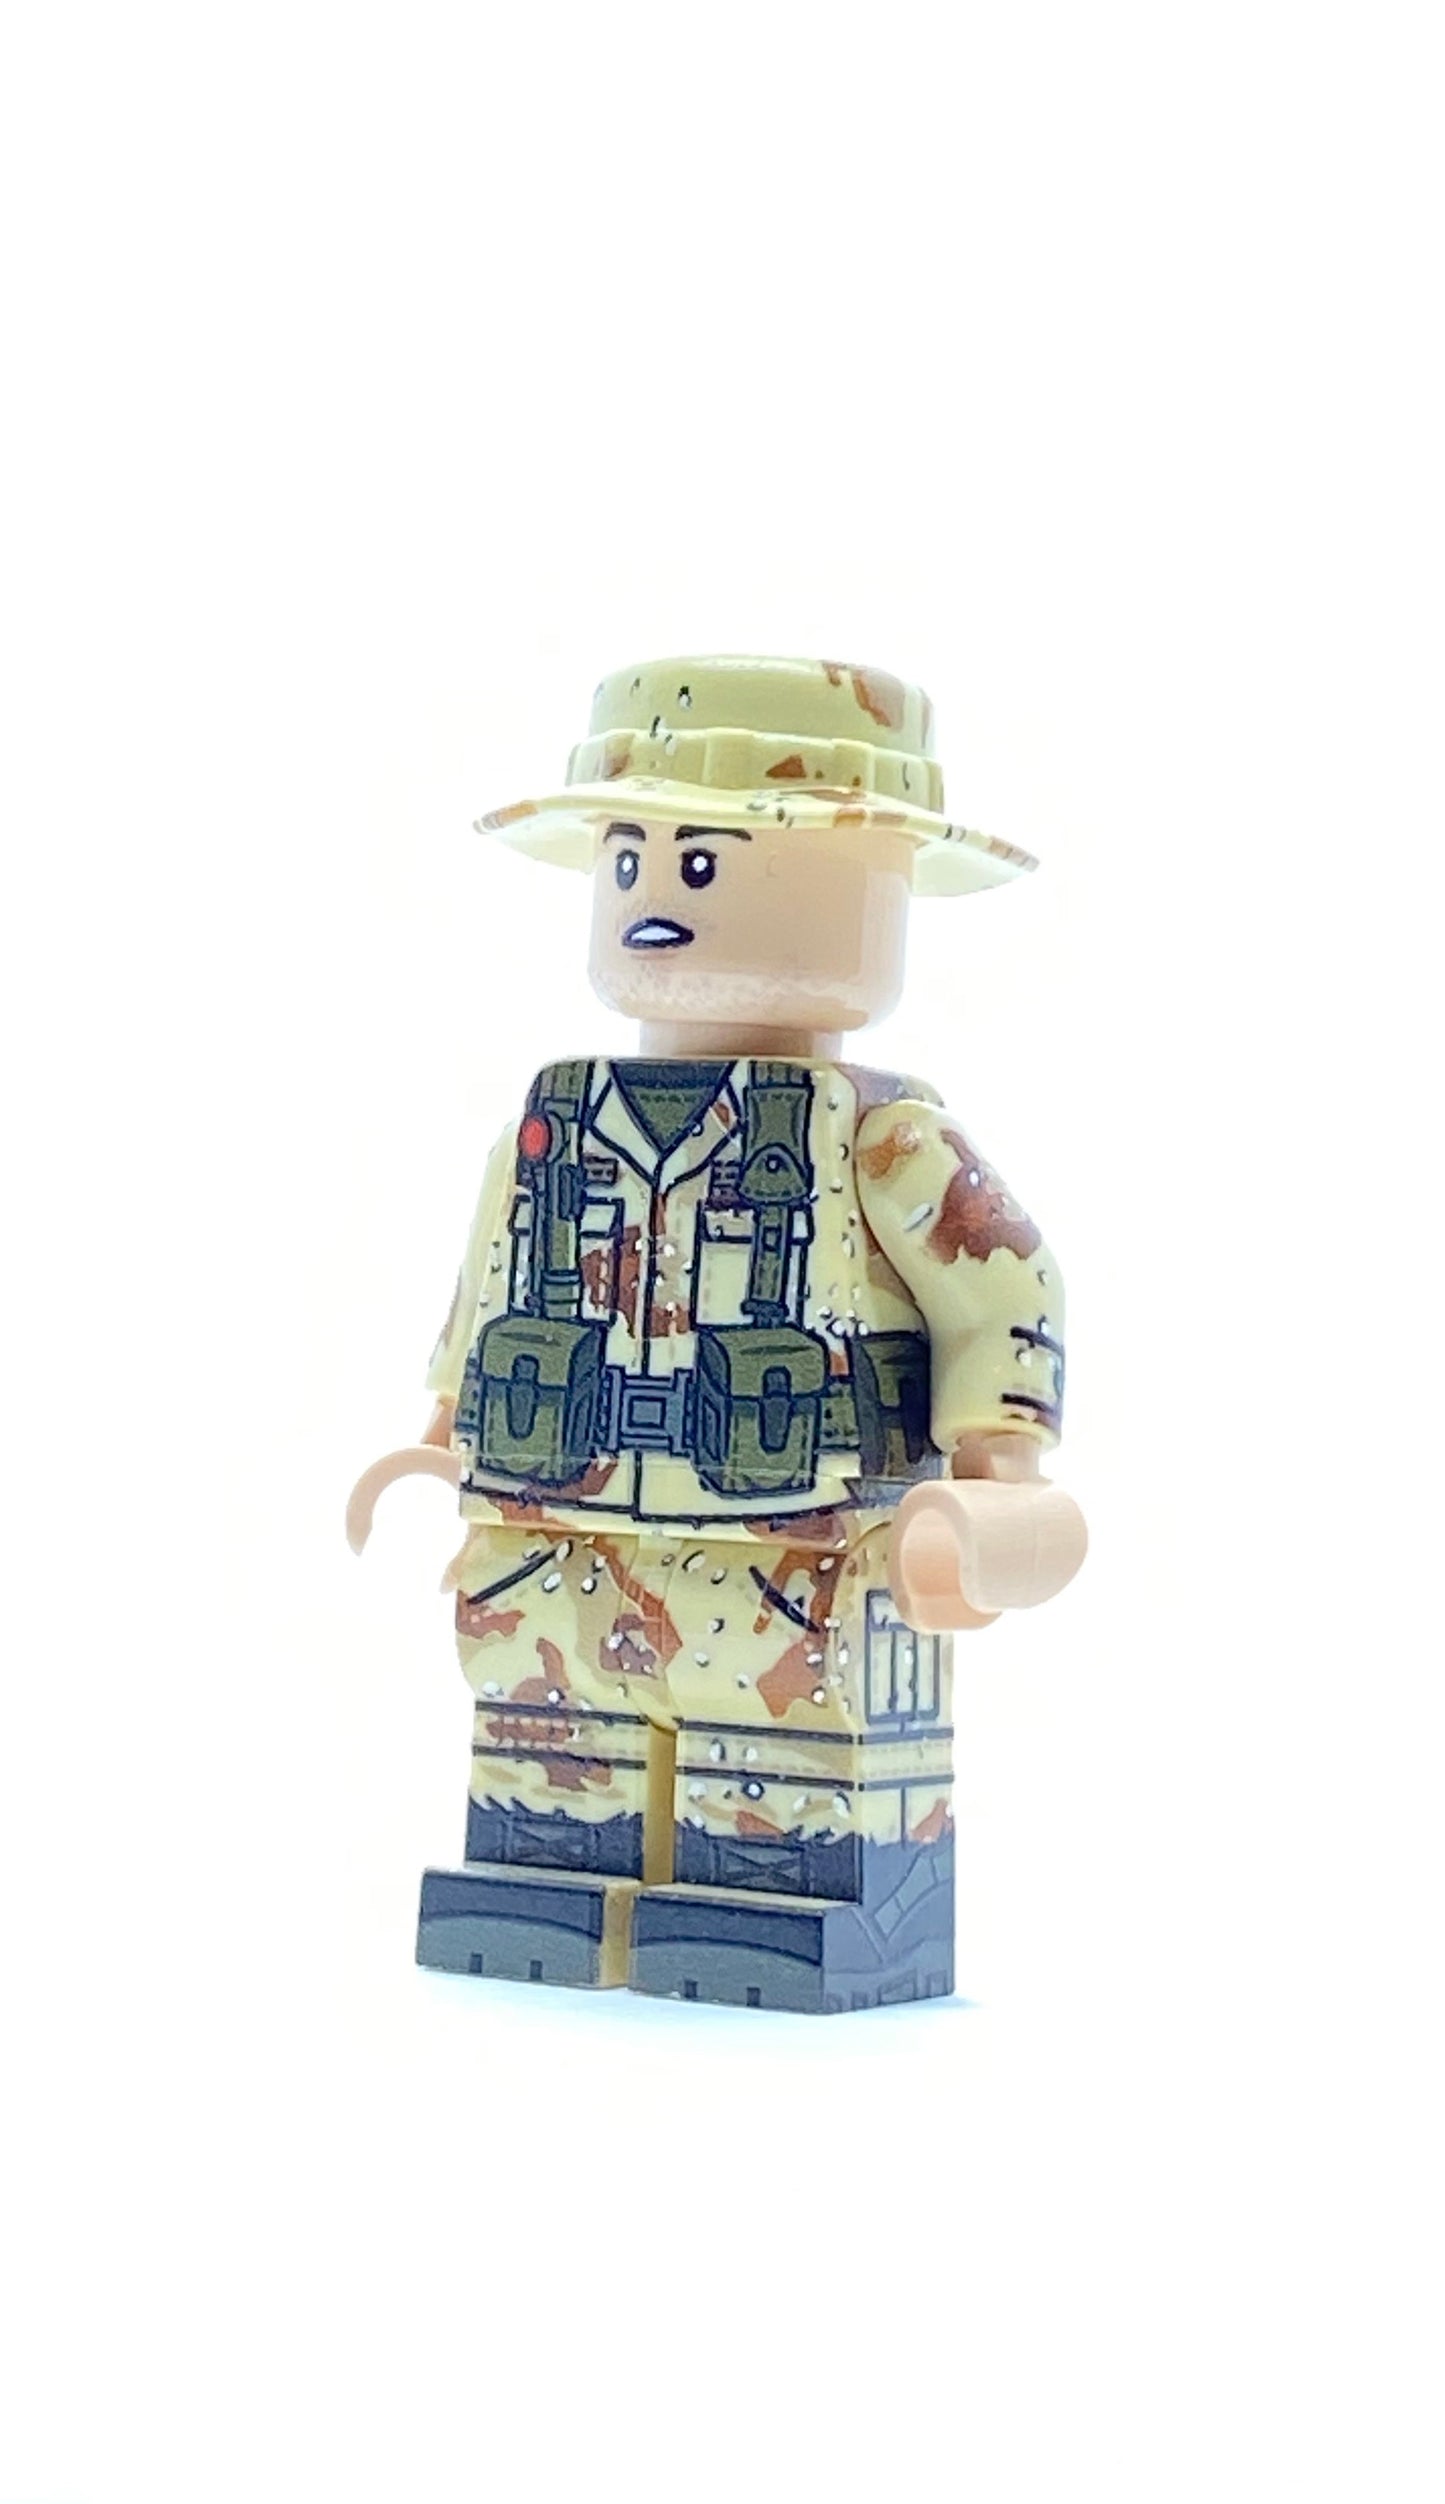 TRI-color soldier with bonnie hat